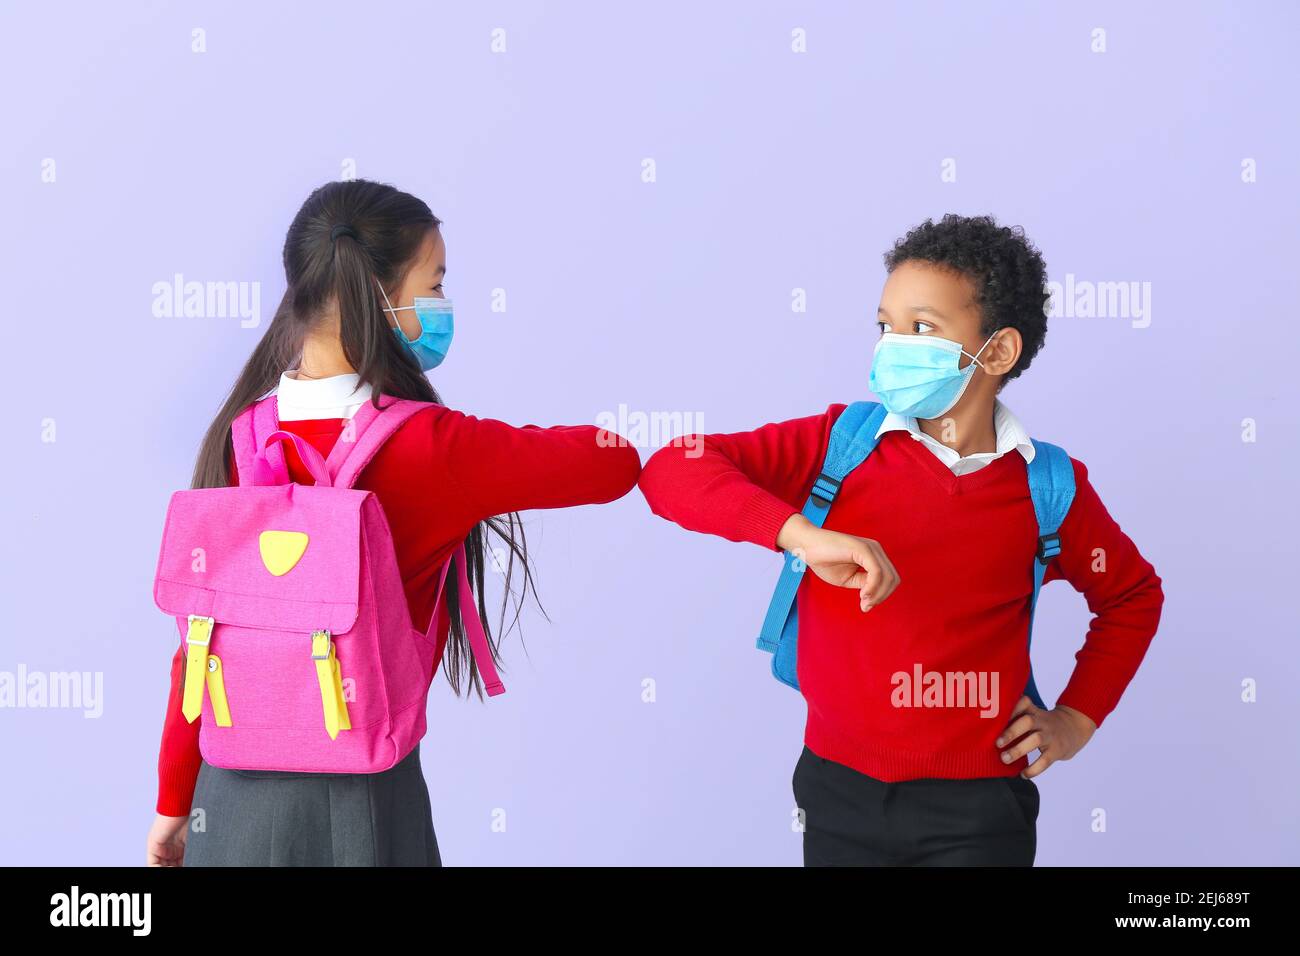 Les petits écoliers se saluant dans des masques médicaux sur fond de couleur. Épidémie de coronavirus Banque D'Images